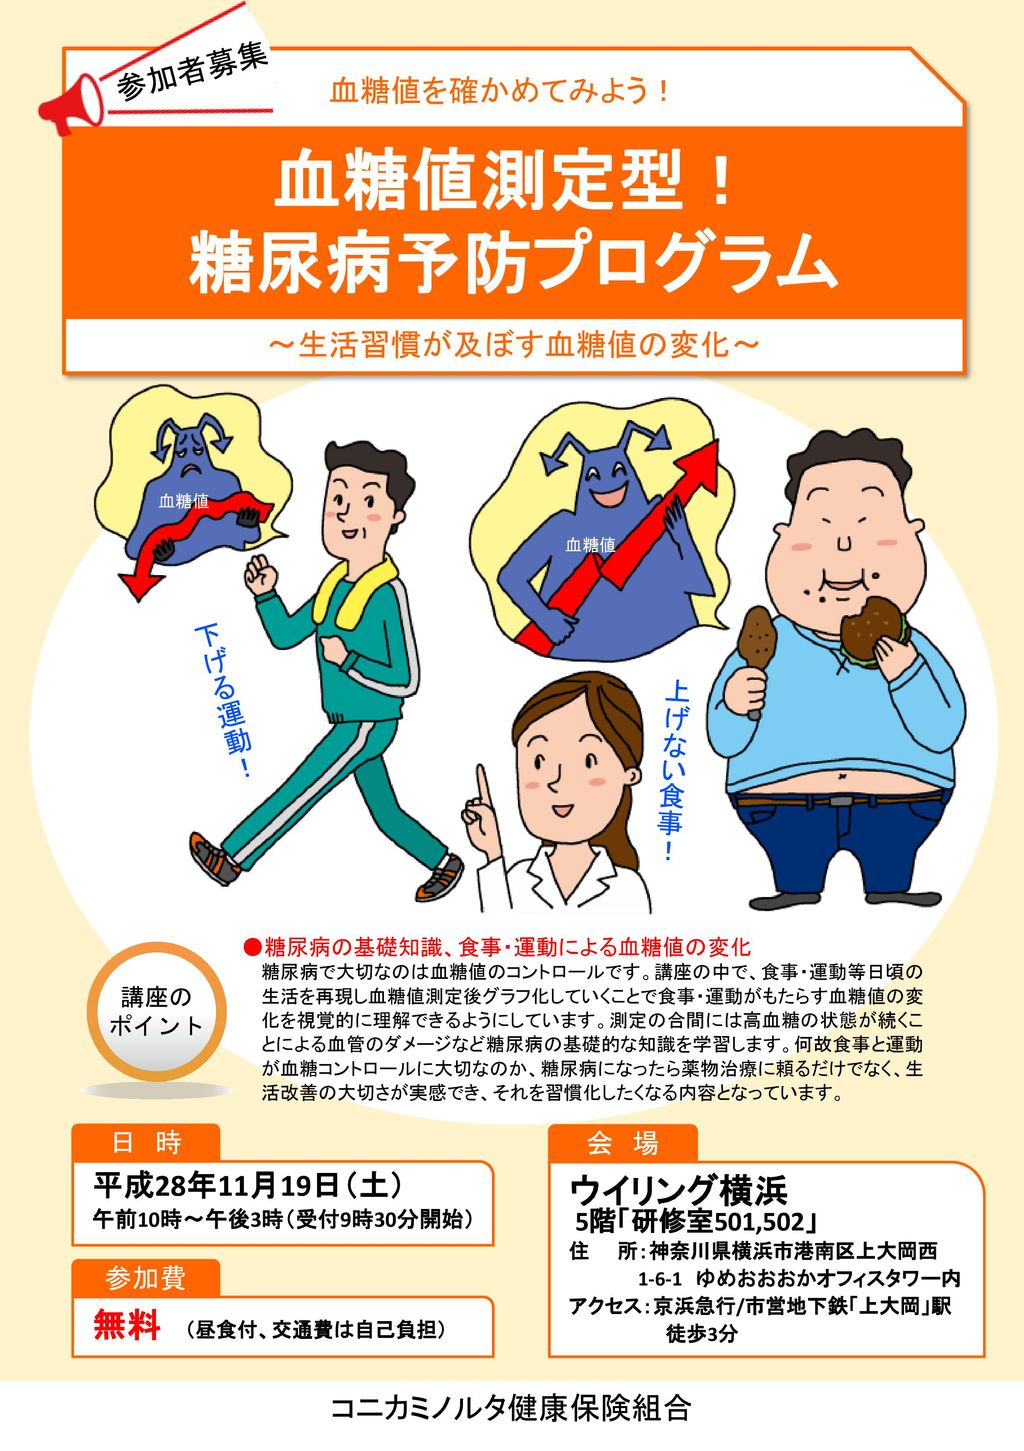 血糖値測定型 糖尿病予防プログラム ウイリング横浜 無料 昼食付 交通費は自己負担 参加者募集 血糖値を確かめてみよう Ppt Download